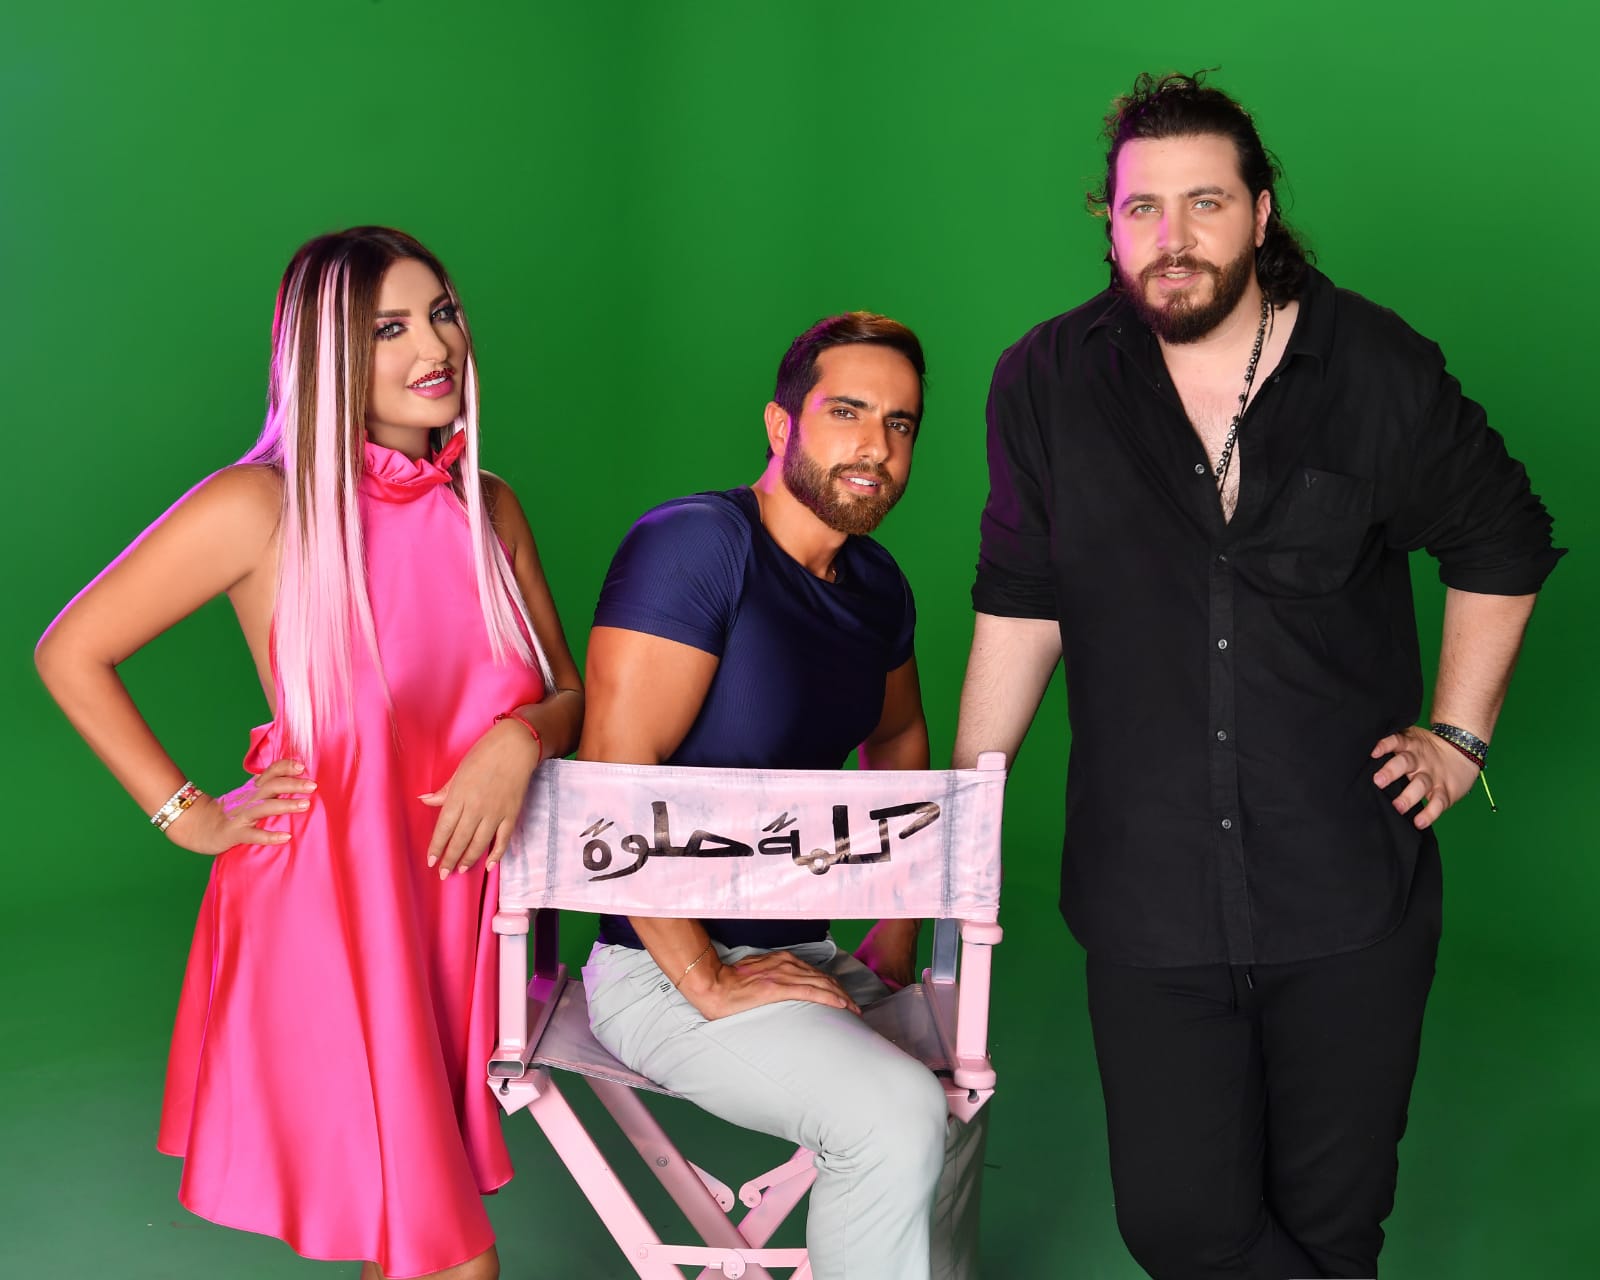 شذى حسون ومحمد قماح والمخرج ذبيان سعد- الصورة من إنستغرام شذى حسون.jpg